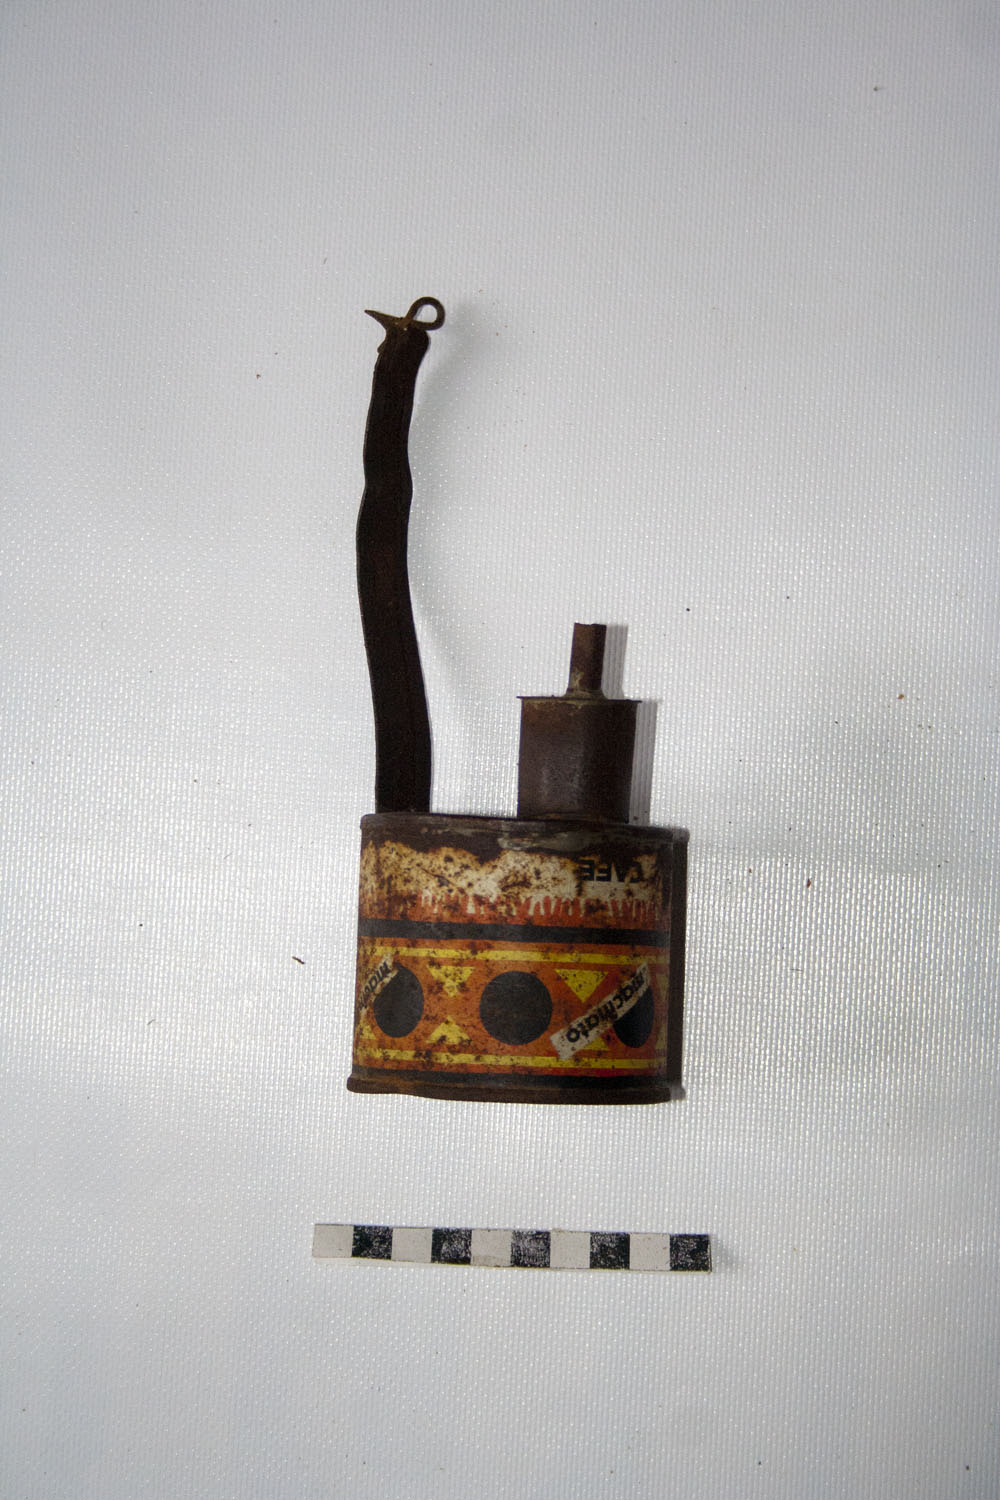 Lampada ad olio, strumento utilizzato per illuminare la stanza al buio